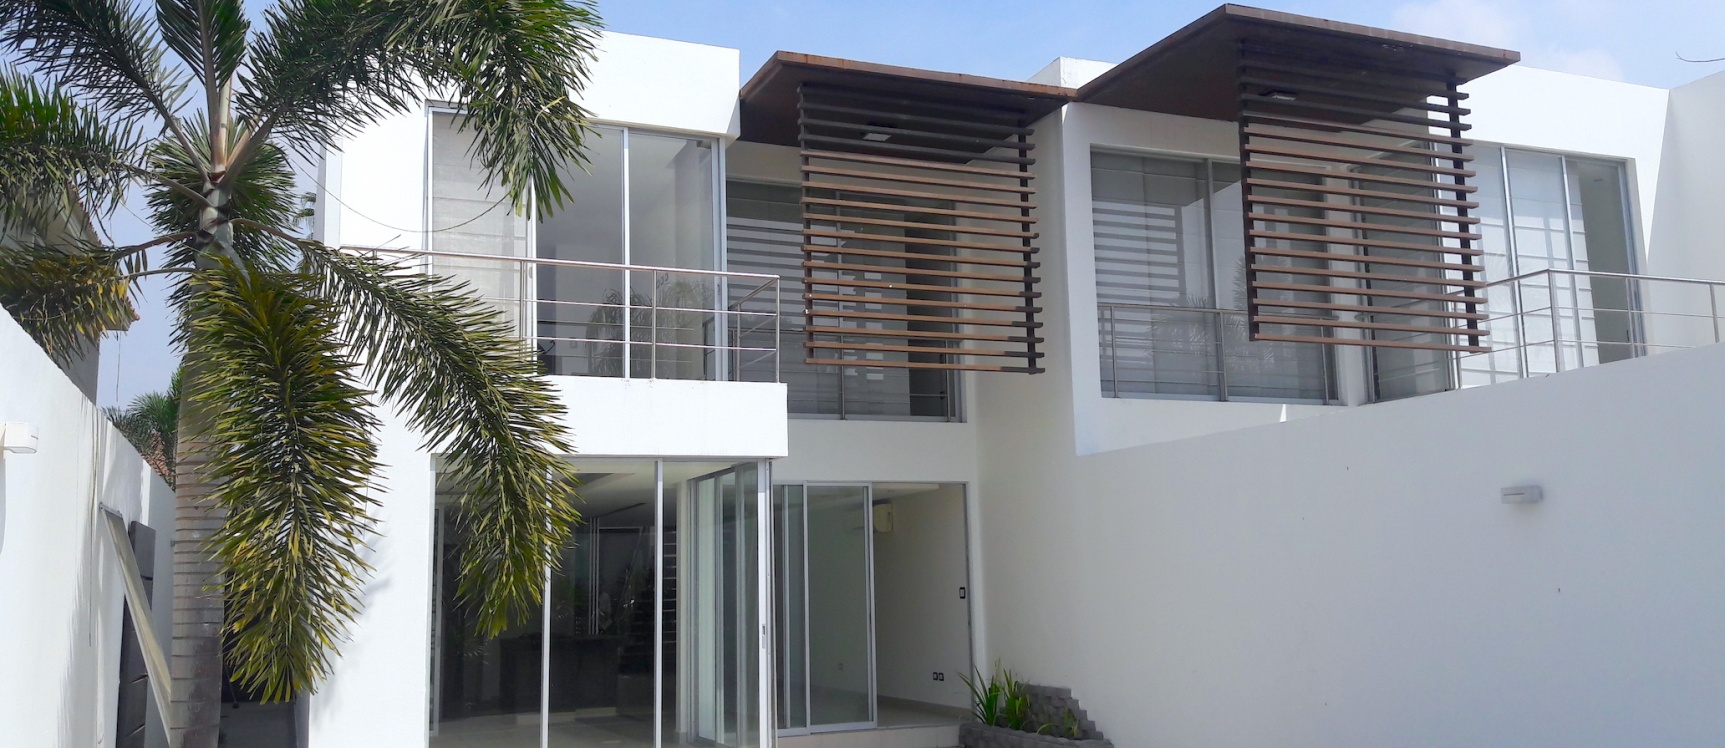 GeoBienes - Alquilo Casa en Urb. Terrasol  Samborondon  - Plusvalia Guayaquil Casas de venta y alquiler Inmobiliaria Ecuador